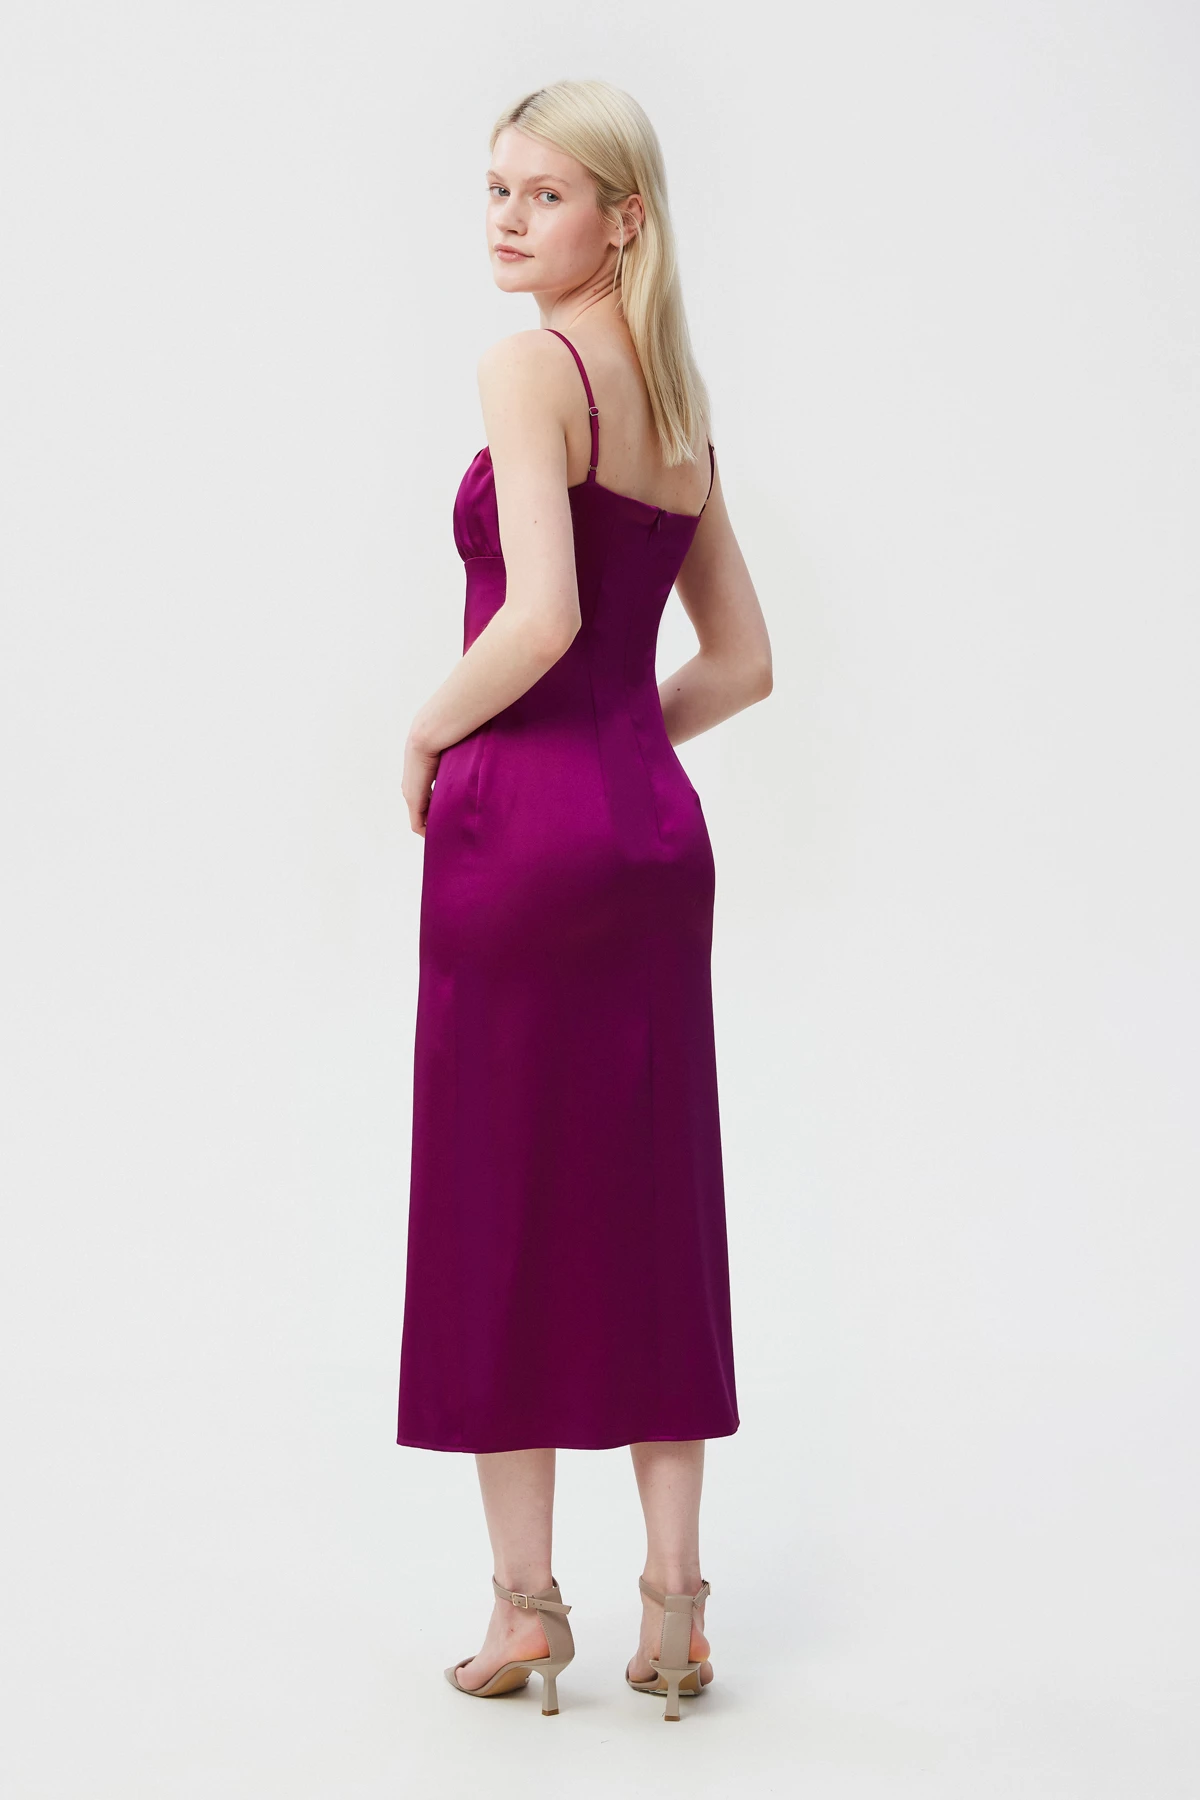 Сукня-комбінація довге міді кольору фуксія з сатину, фото 3